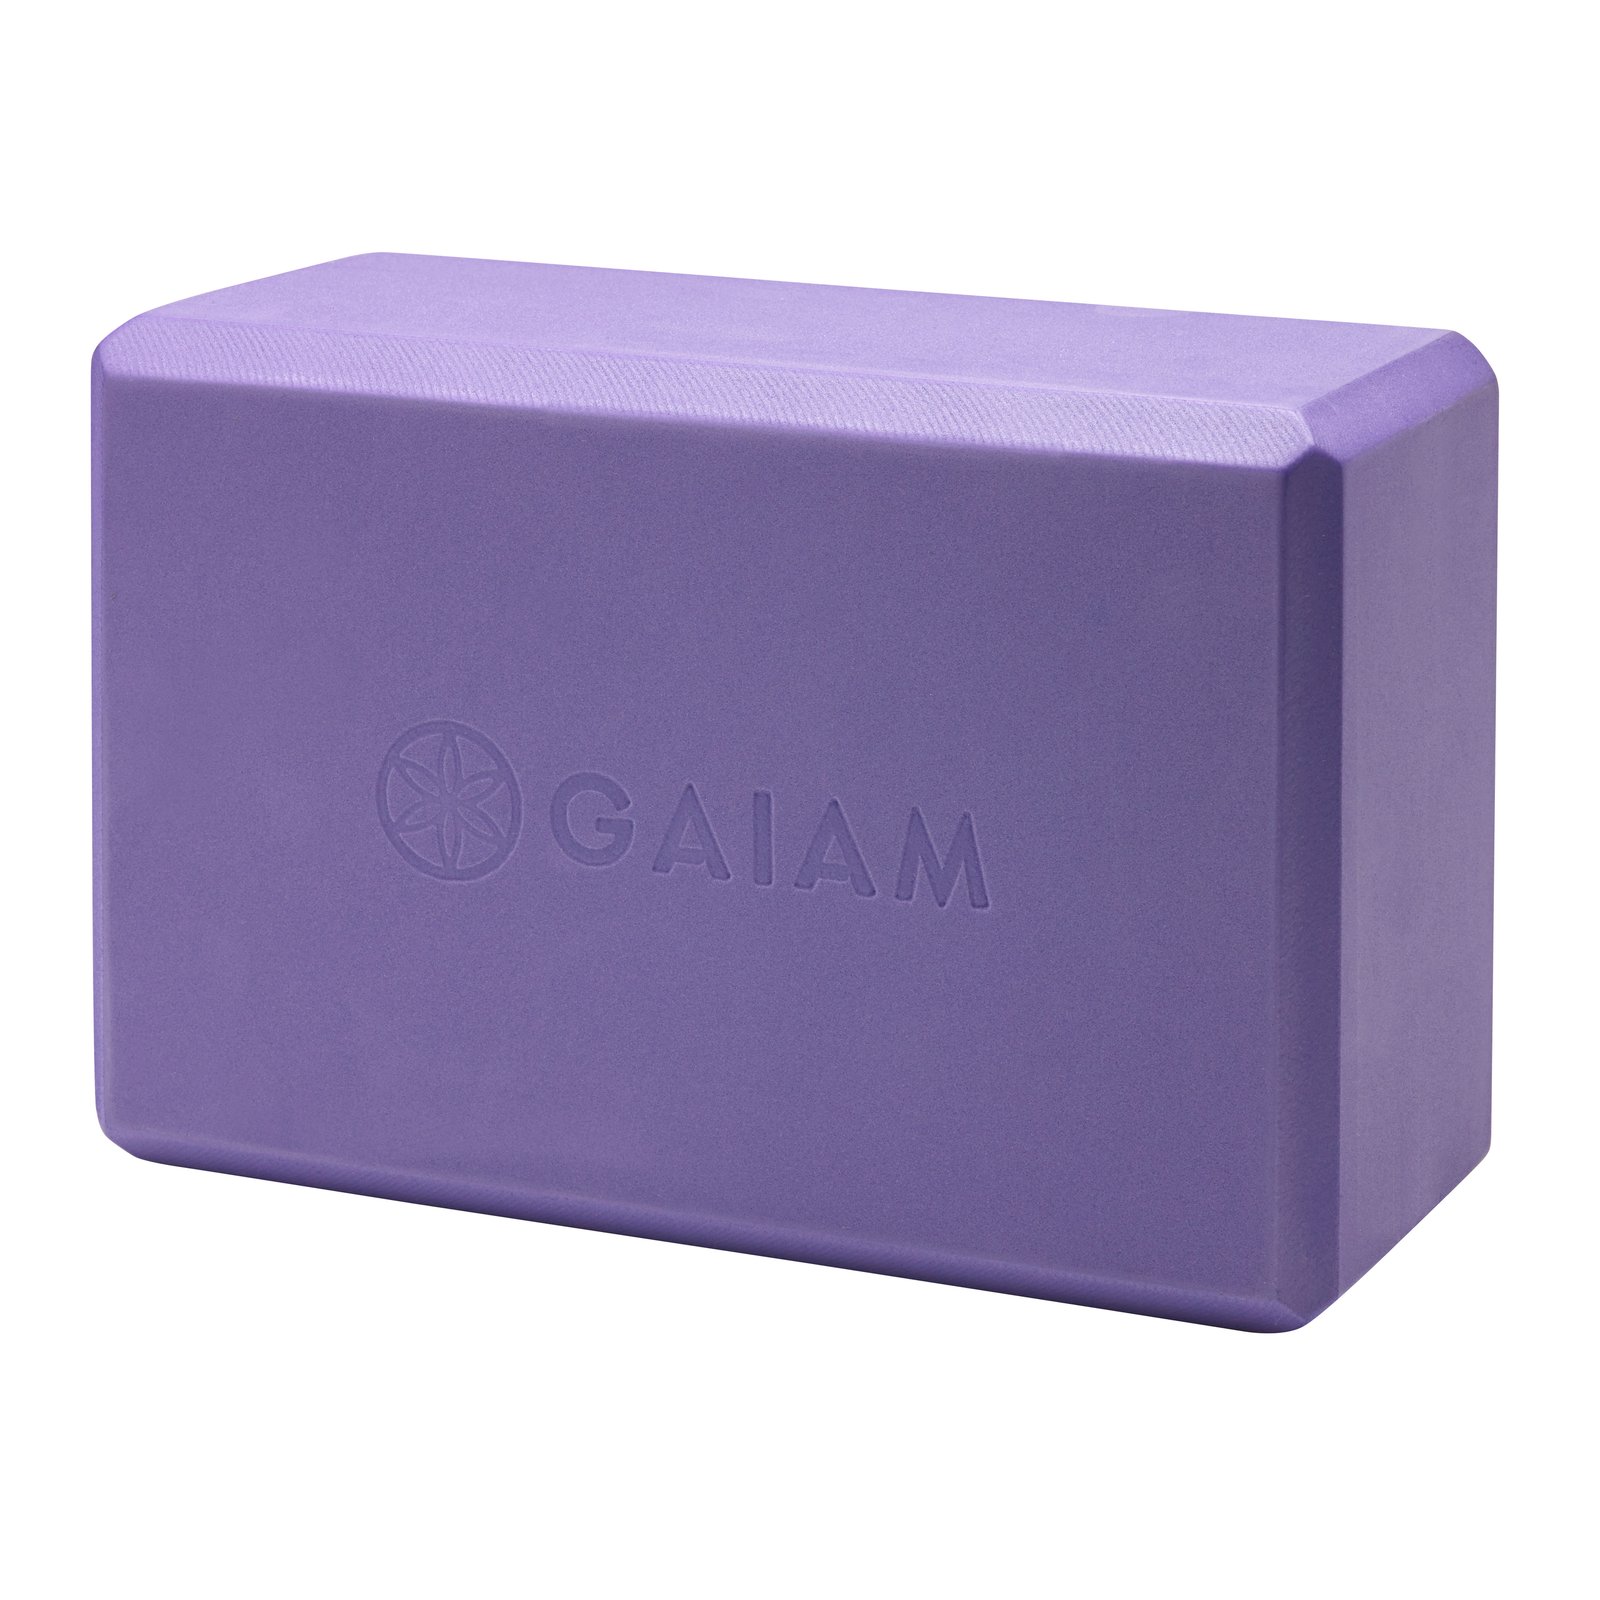 GAIAM Yoga Block Purple